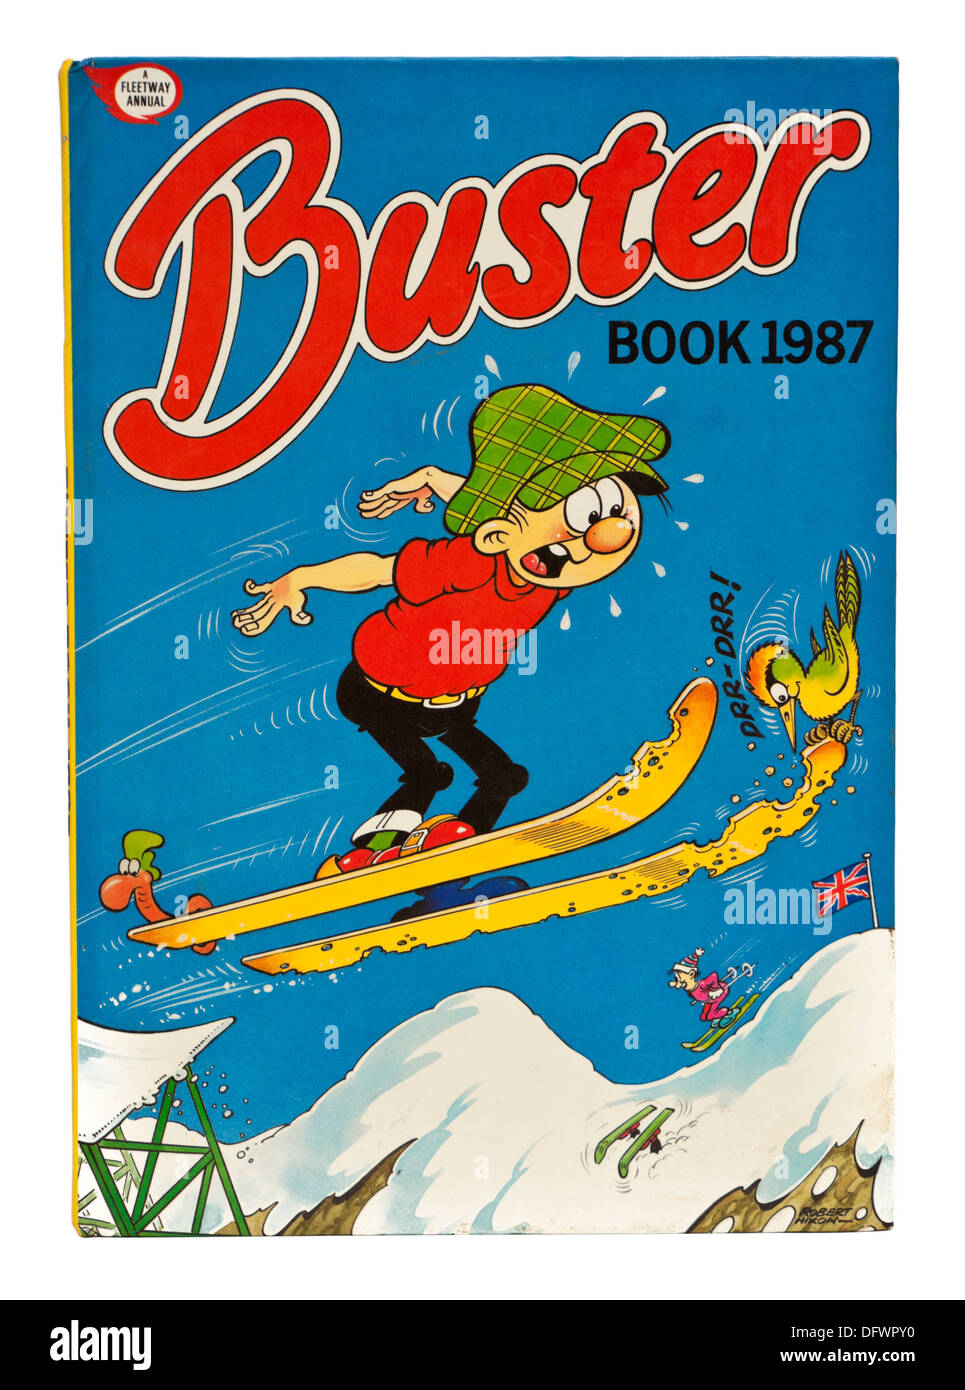 L'annata 1987 "Buster' annuale di fumetti Foto Stock